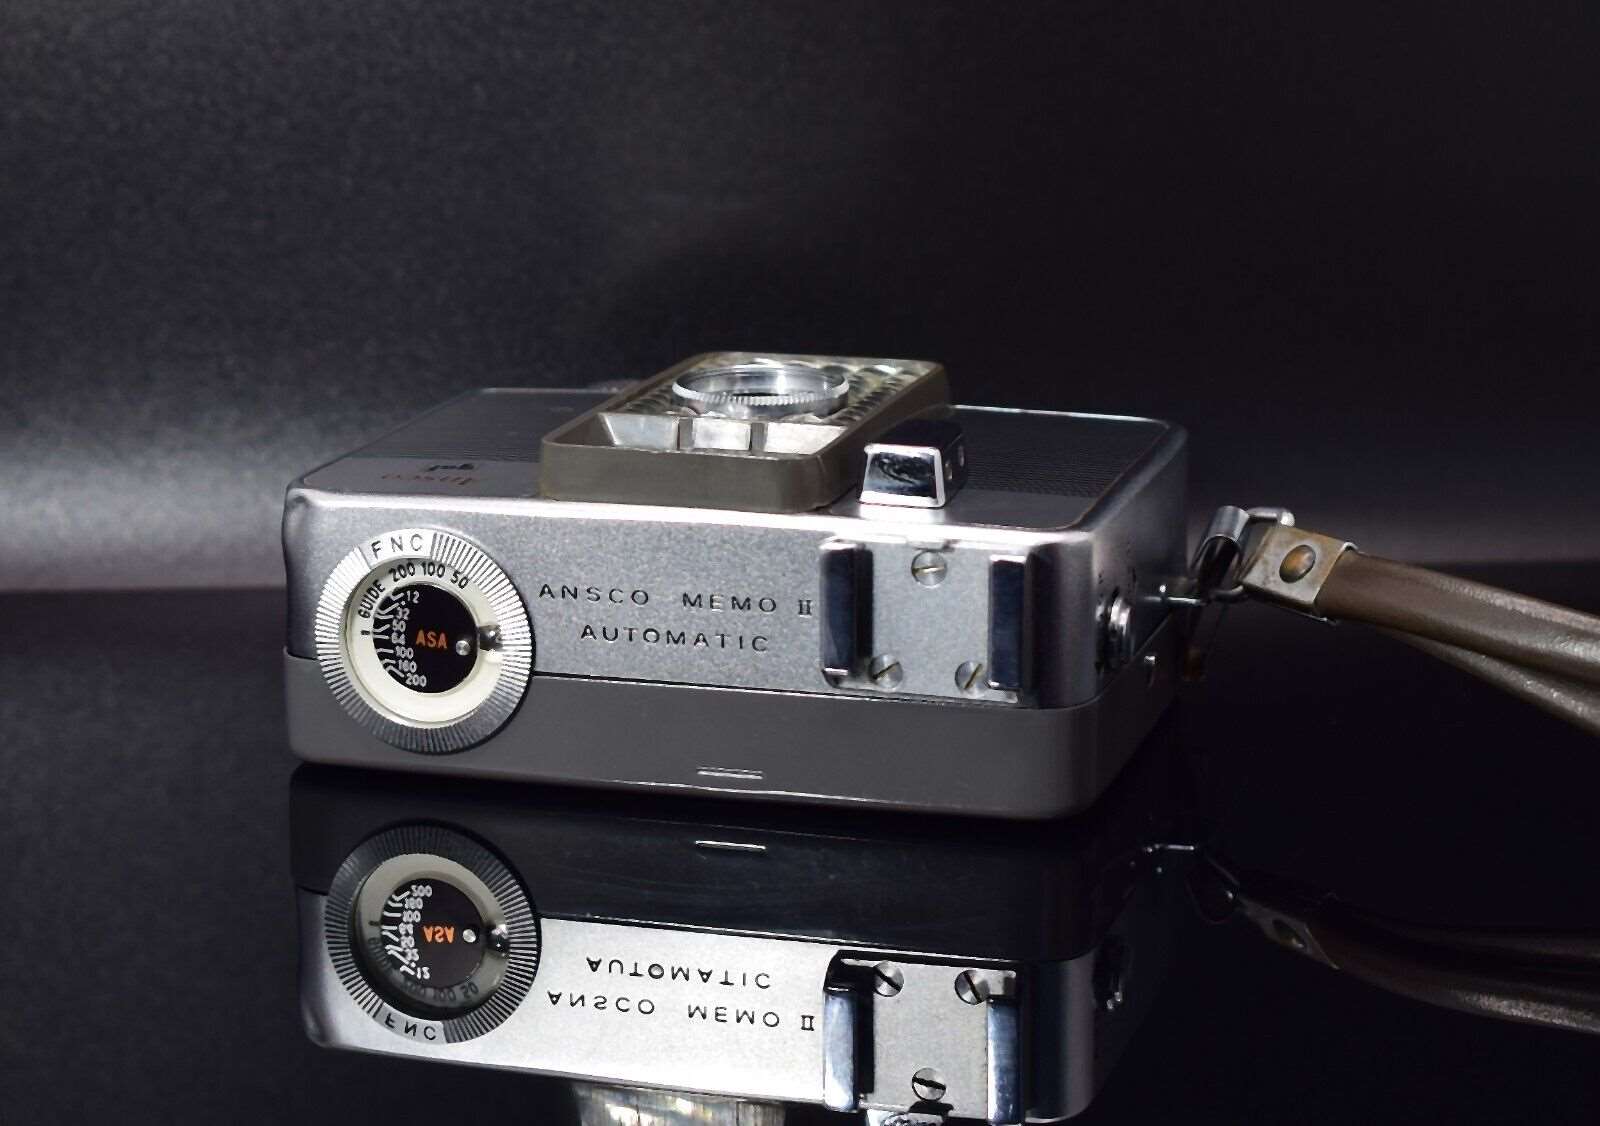 GAF ANSCO Memo II Automatic Half Frame Film Camera & Flash Set 1967 Rare Item